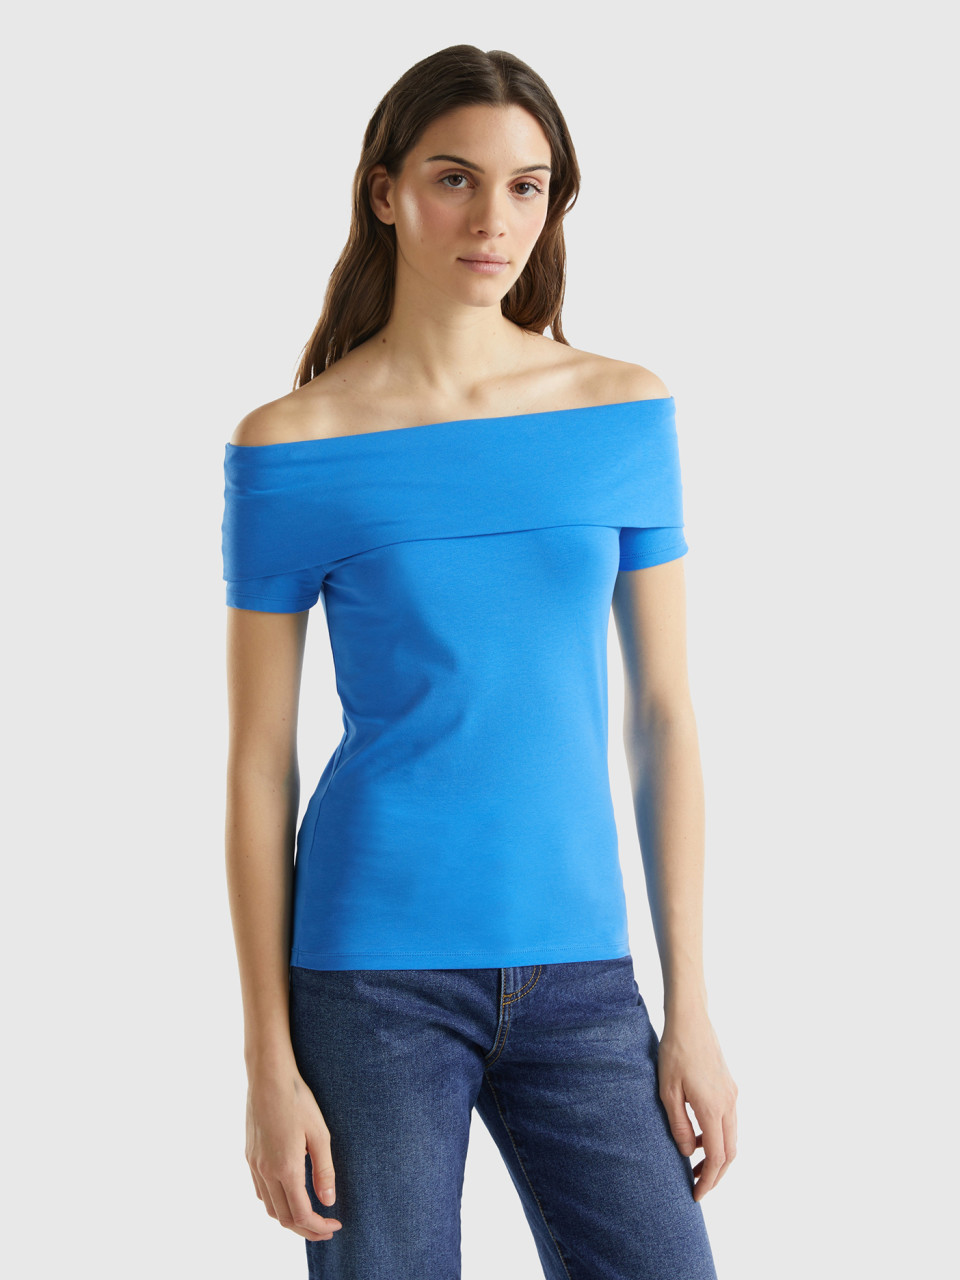 Benetton, Eng Anliegendes T-shirt Mit Freien Schultern, Blau, female